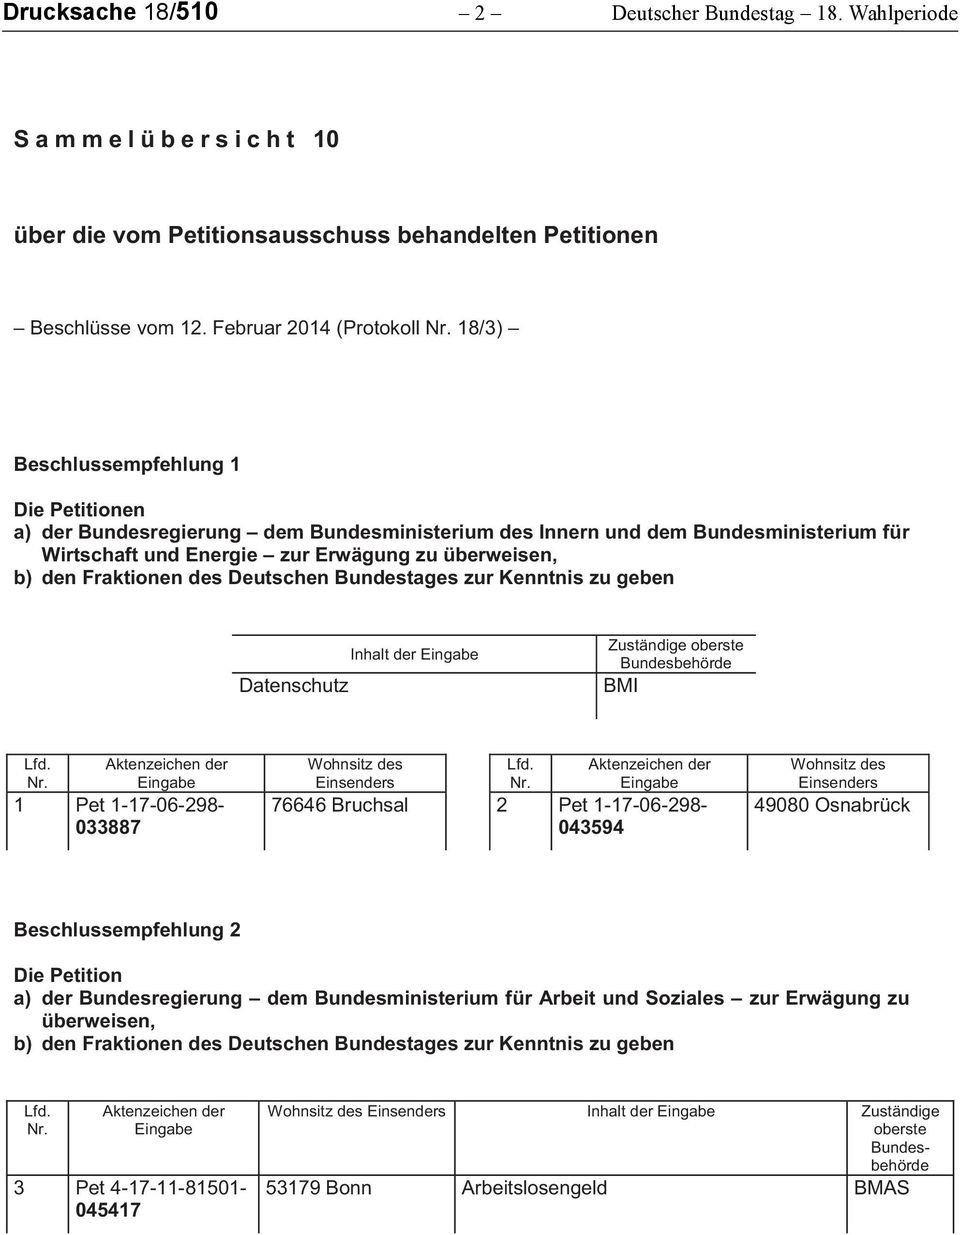 überweisen, b) den Fraktionen des Deutschen Bundestages zur Kenntnis zu geben Datenschutz Inhalt der BMI 1 Pet 1-17-06-298- 033887 76646 Bruchsal 2 Pet 1-17-06-298- 043594 49080 Osnabrück